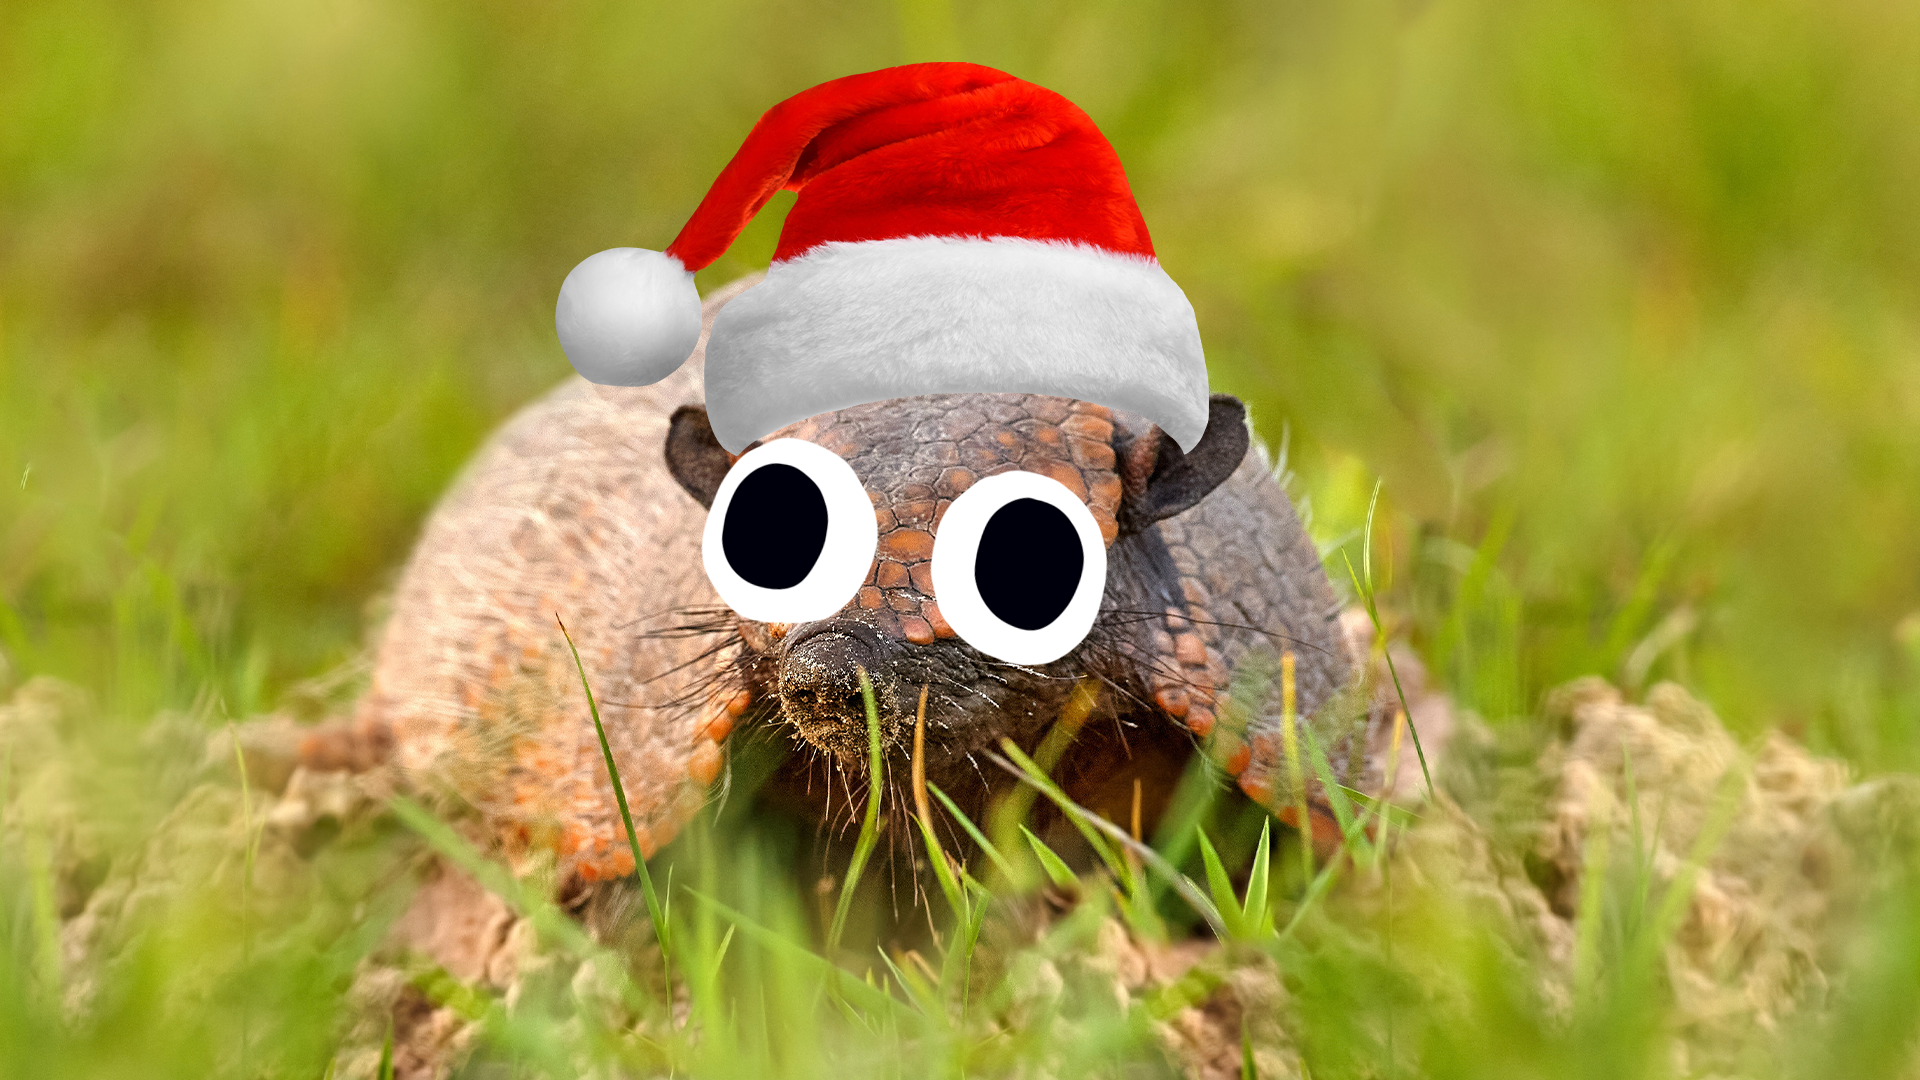 A holiday armadillo